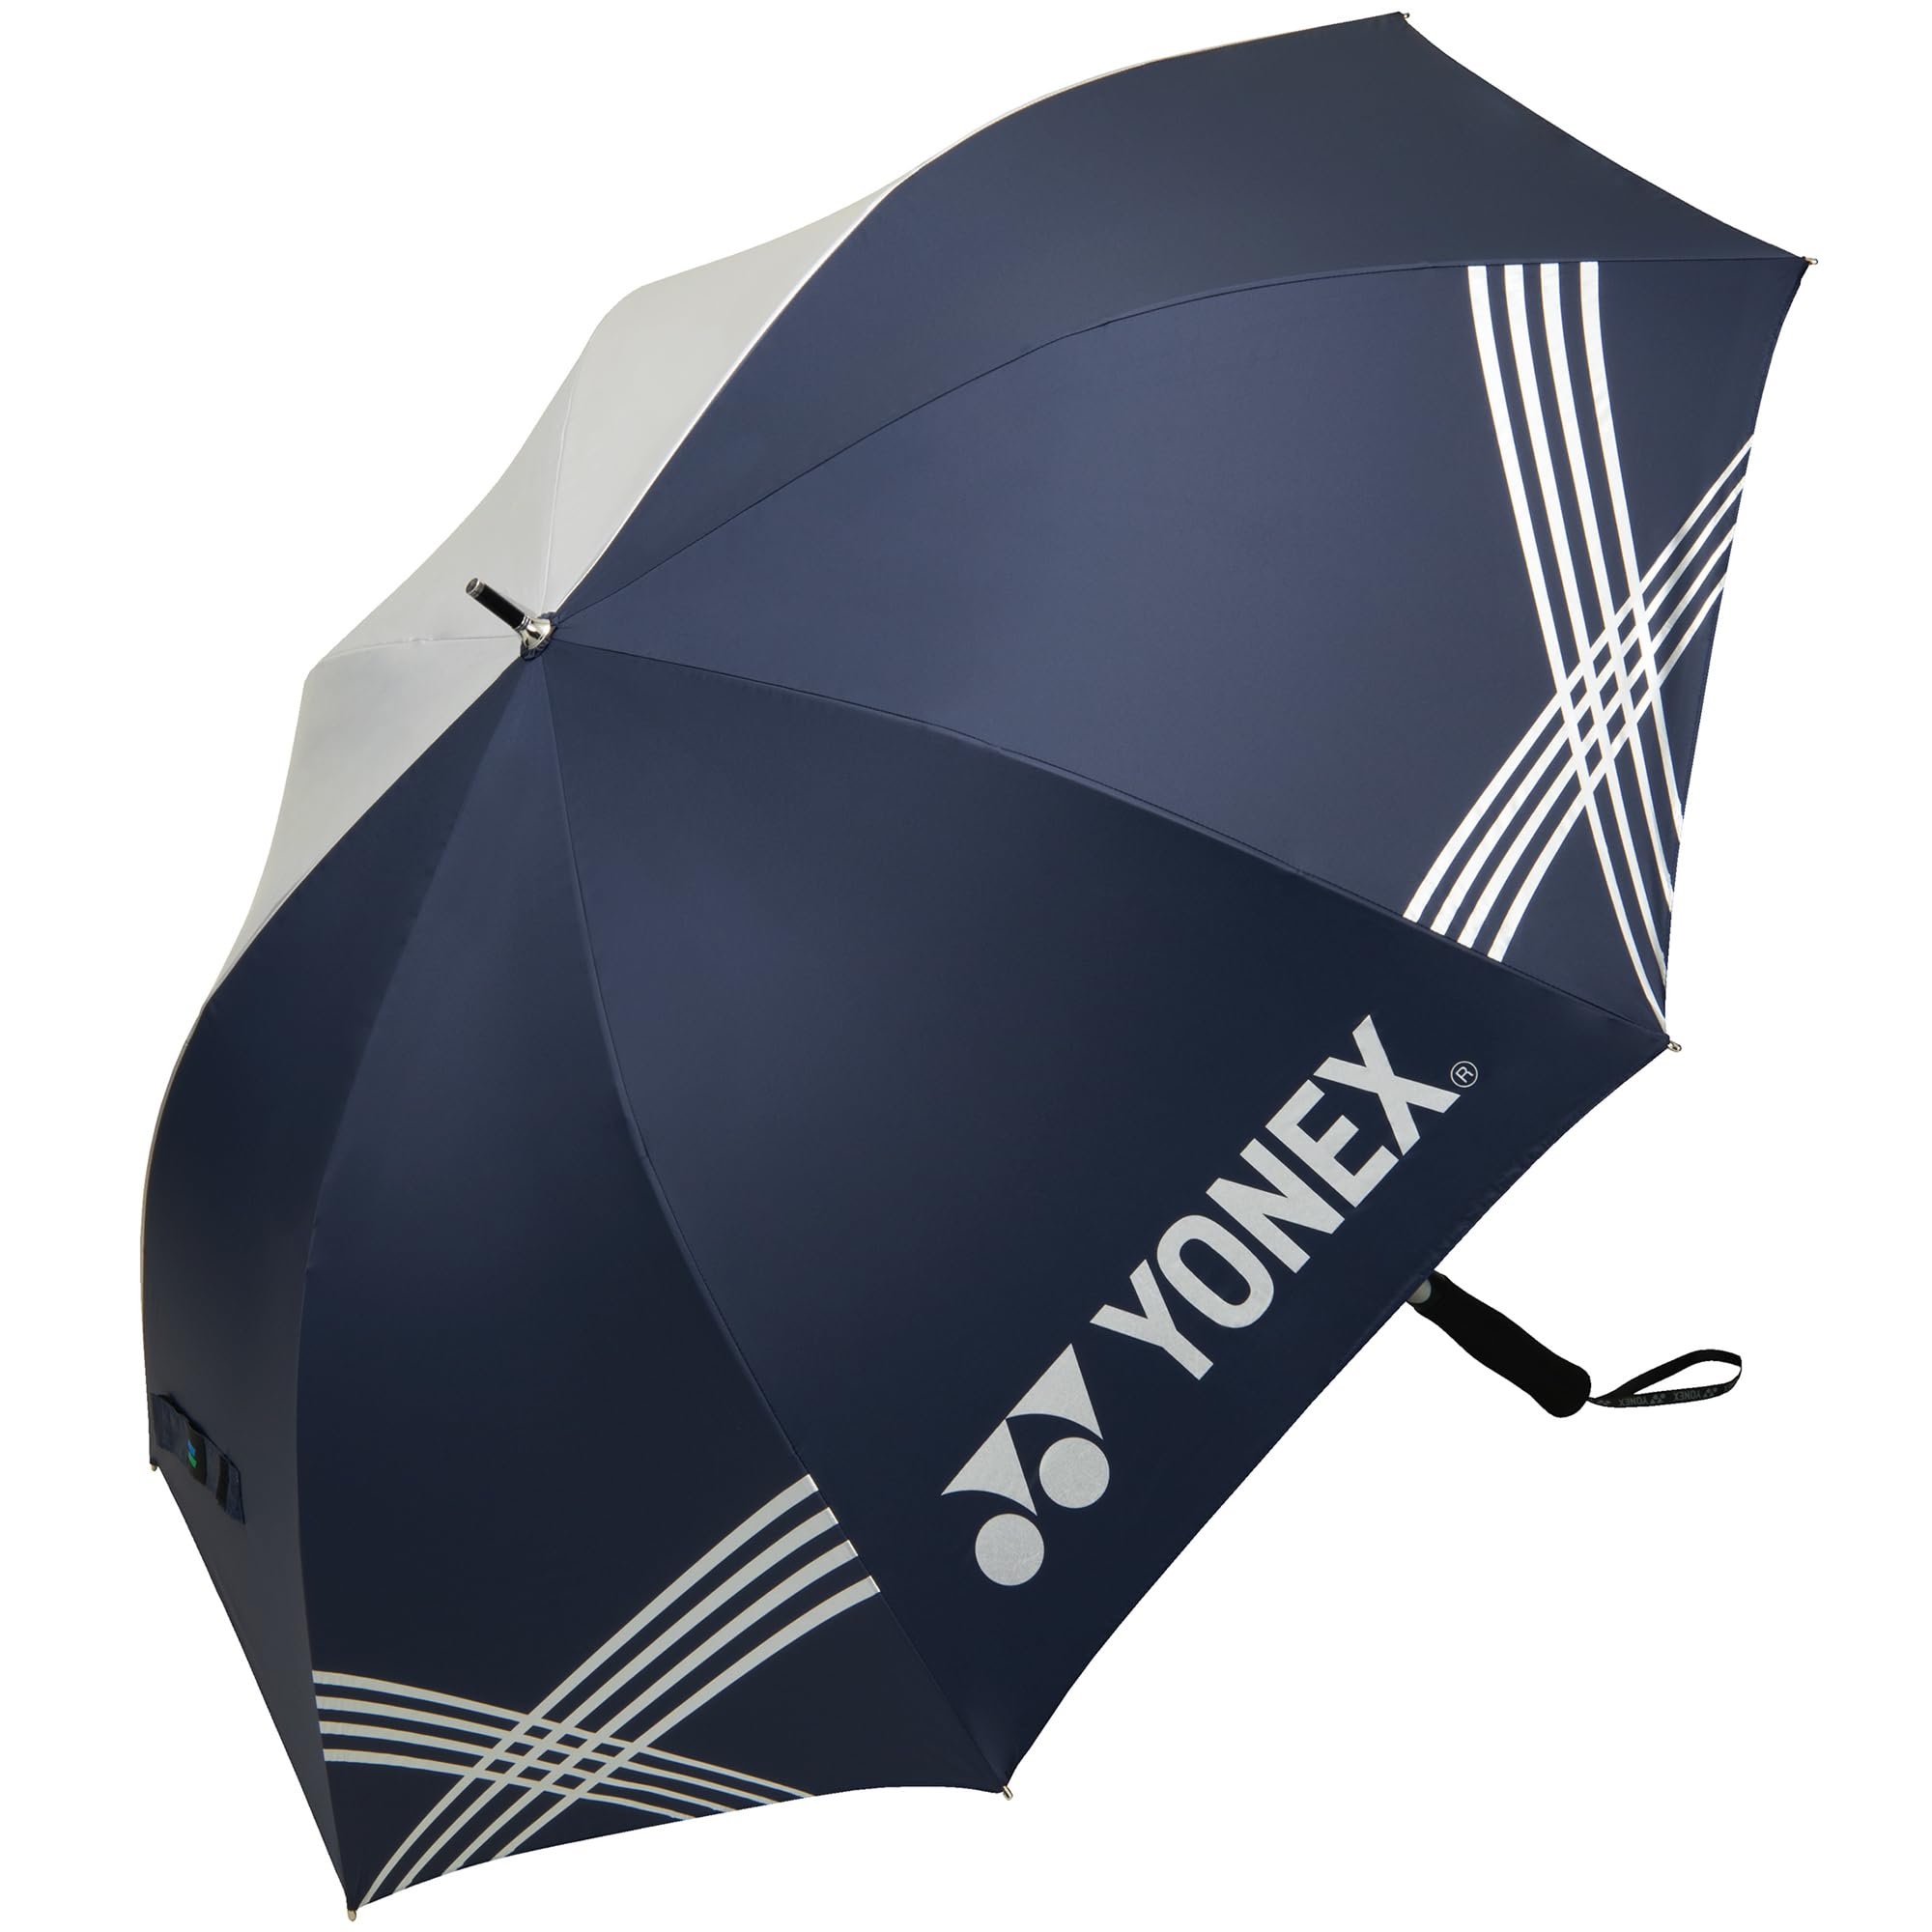 ヨネックス(YONEX) GP-S371 日傘/雨傘兼用 パラソル (70cm) 【ネイビーブルー】 UVカット率99%以上 1級遮光 ワンタッチオー